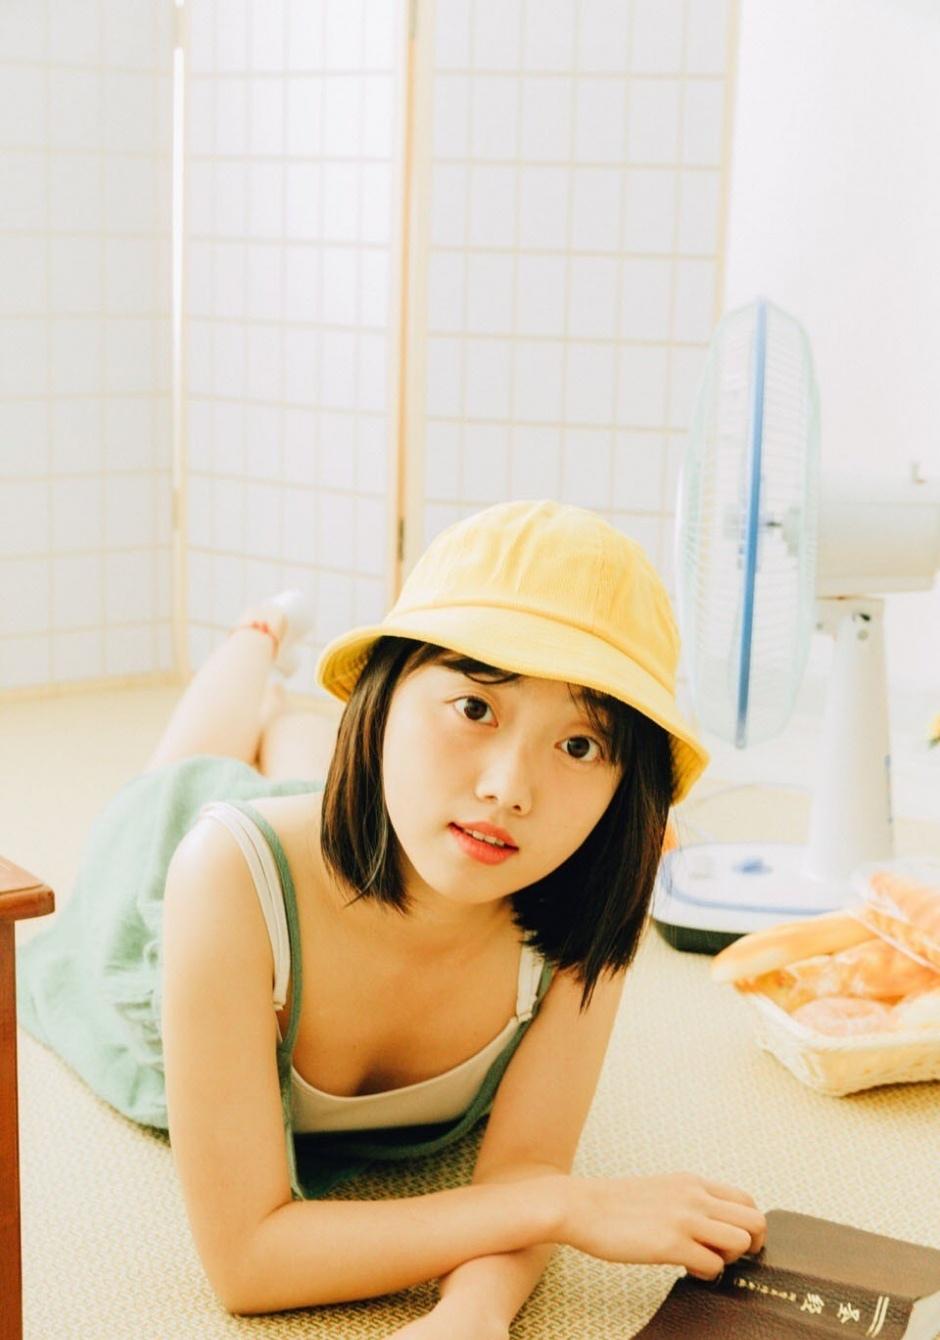 日本短发美女吊带裙白嫩美腿香肩私房时尚写真图片